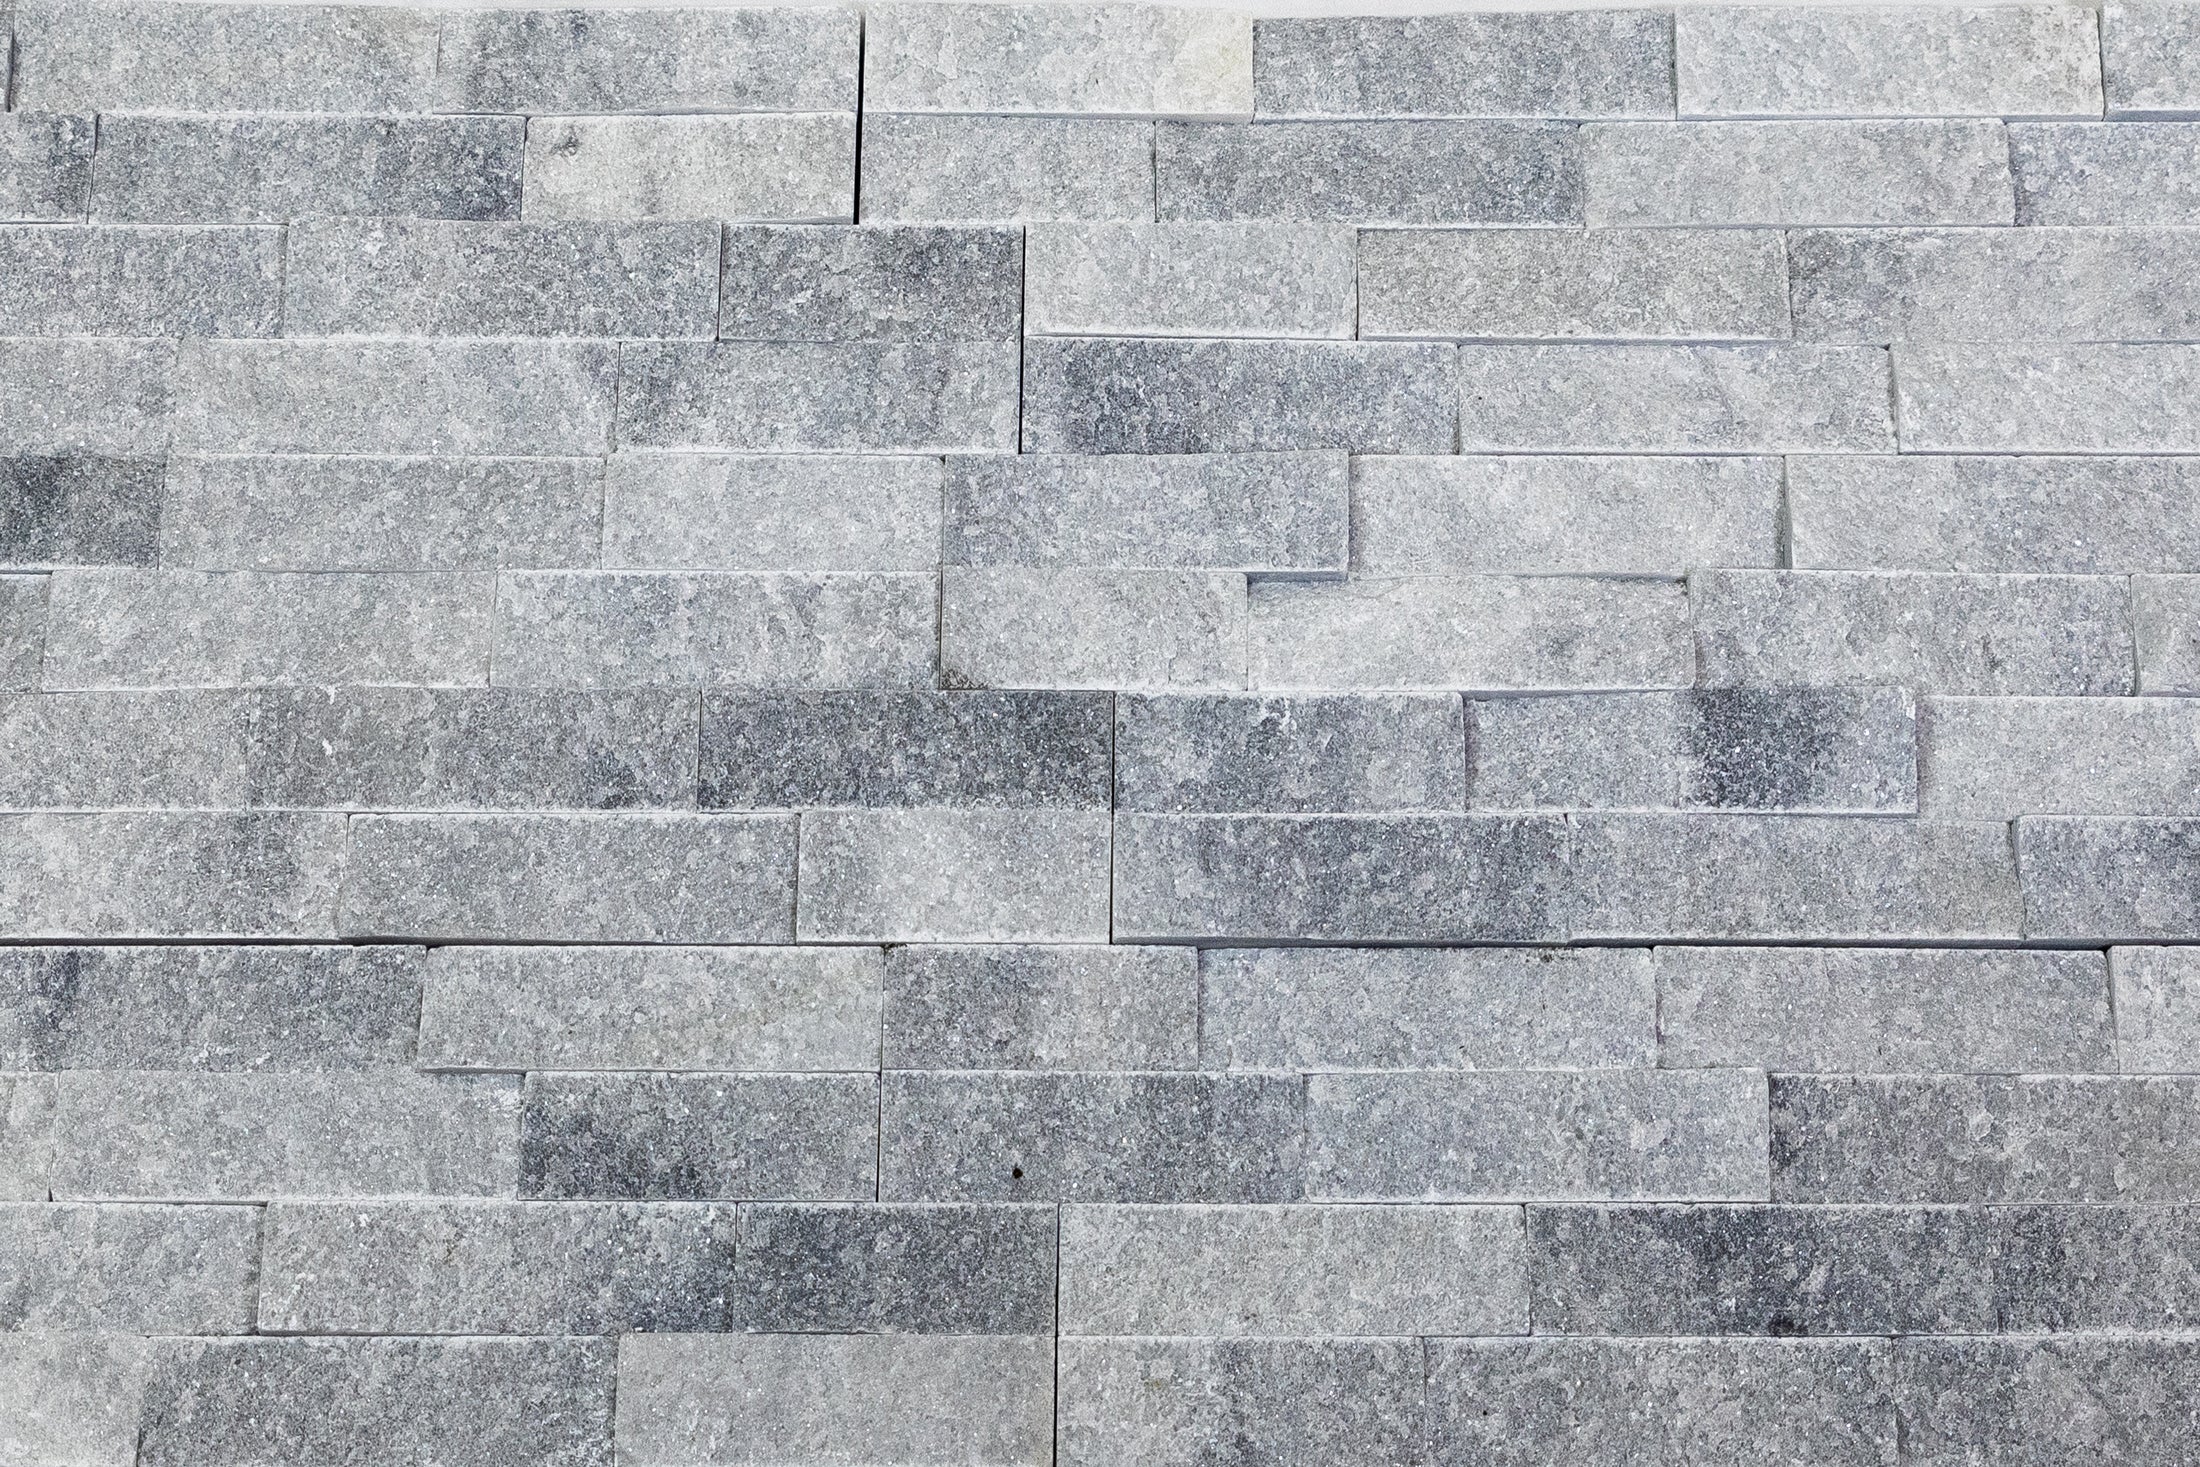 Natural Stacked Stone Wall Cladding Panels - Smokey Grey